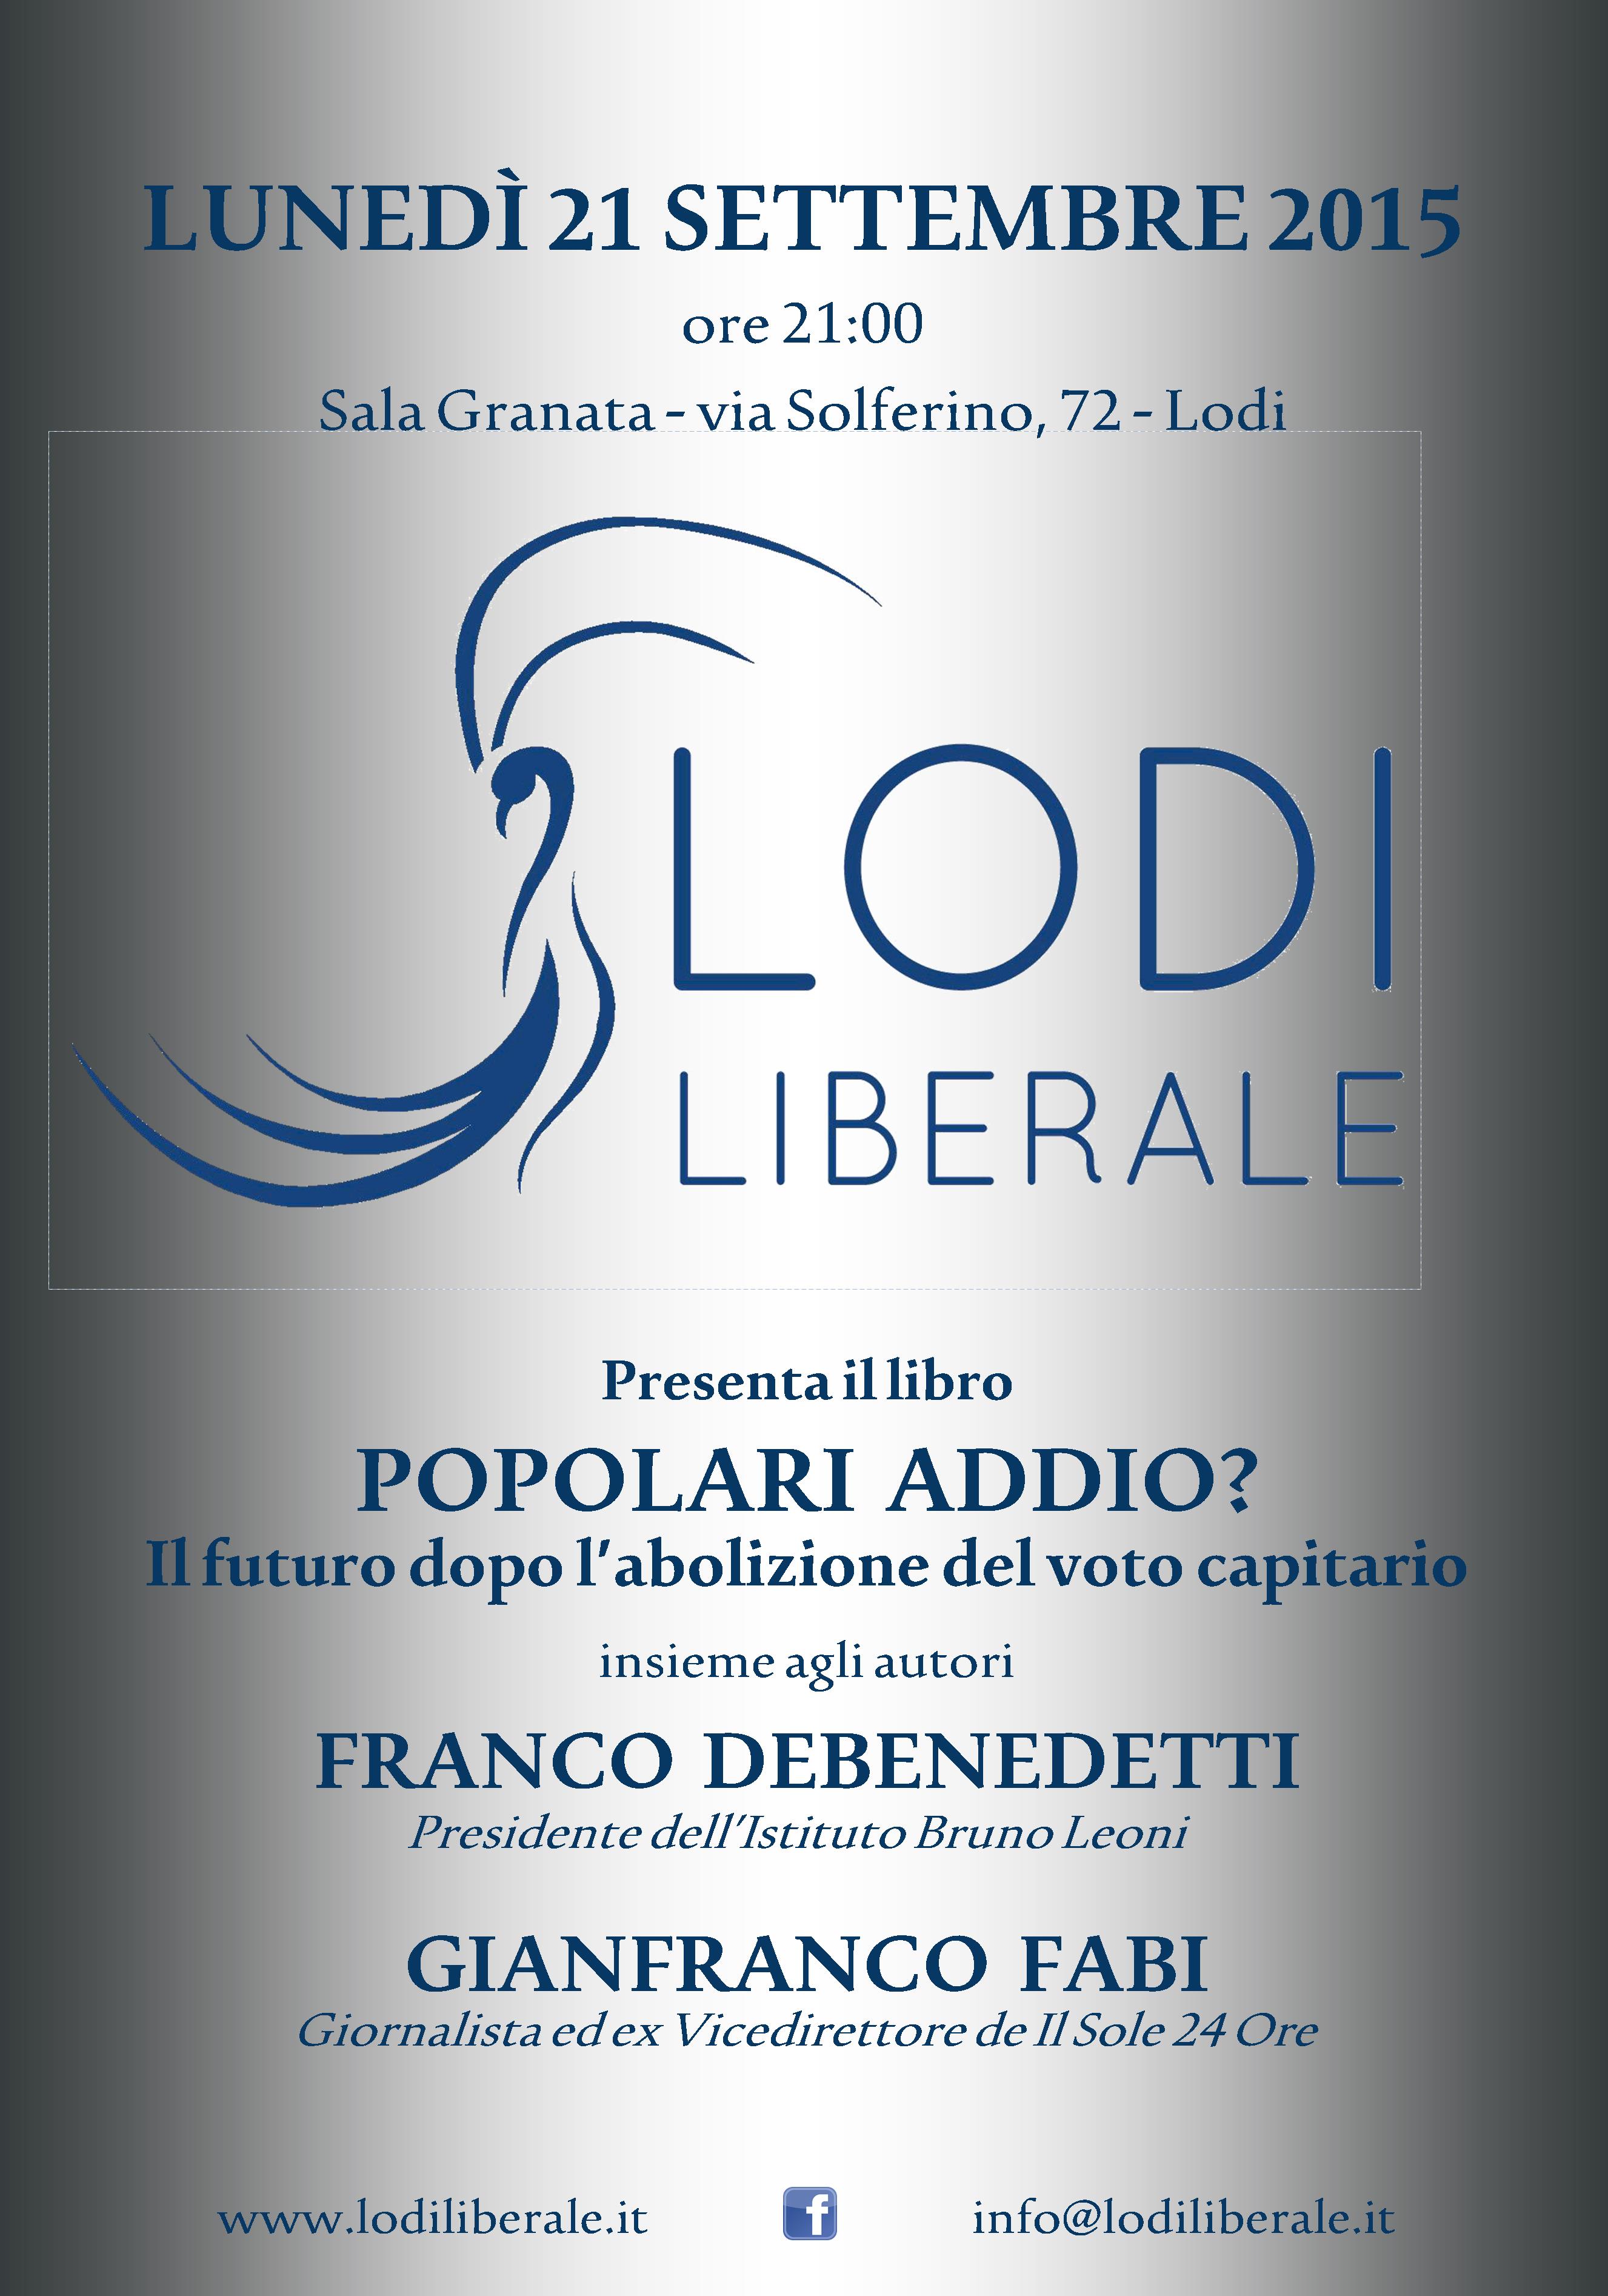 Associazione Lodi Liberale - Presentazione del libro "Popolari addio. Il futuro dopo l'abolizione del voto capitario" di Franco Debenedetti e Gianfranco Fabi